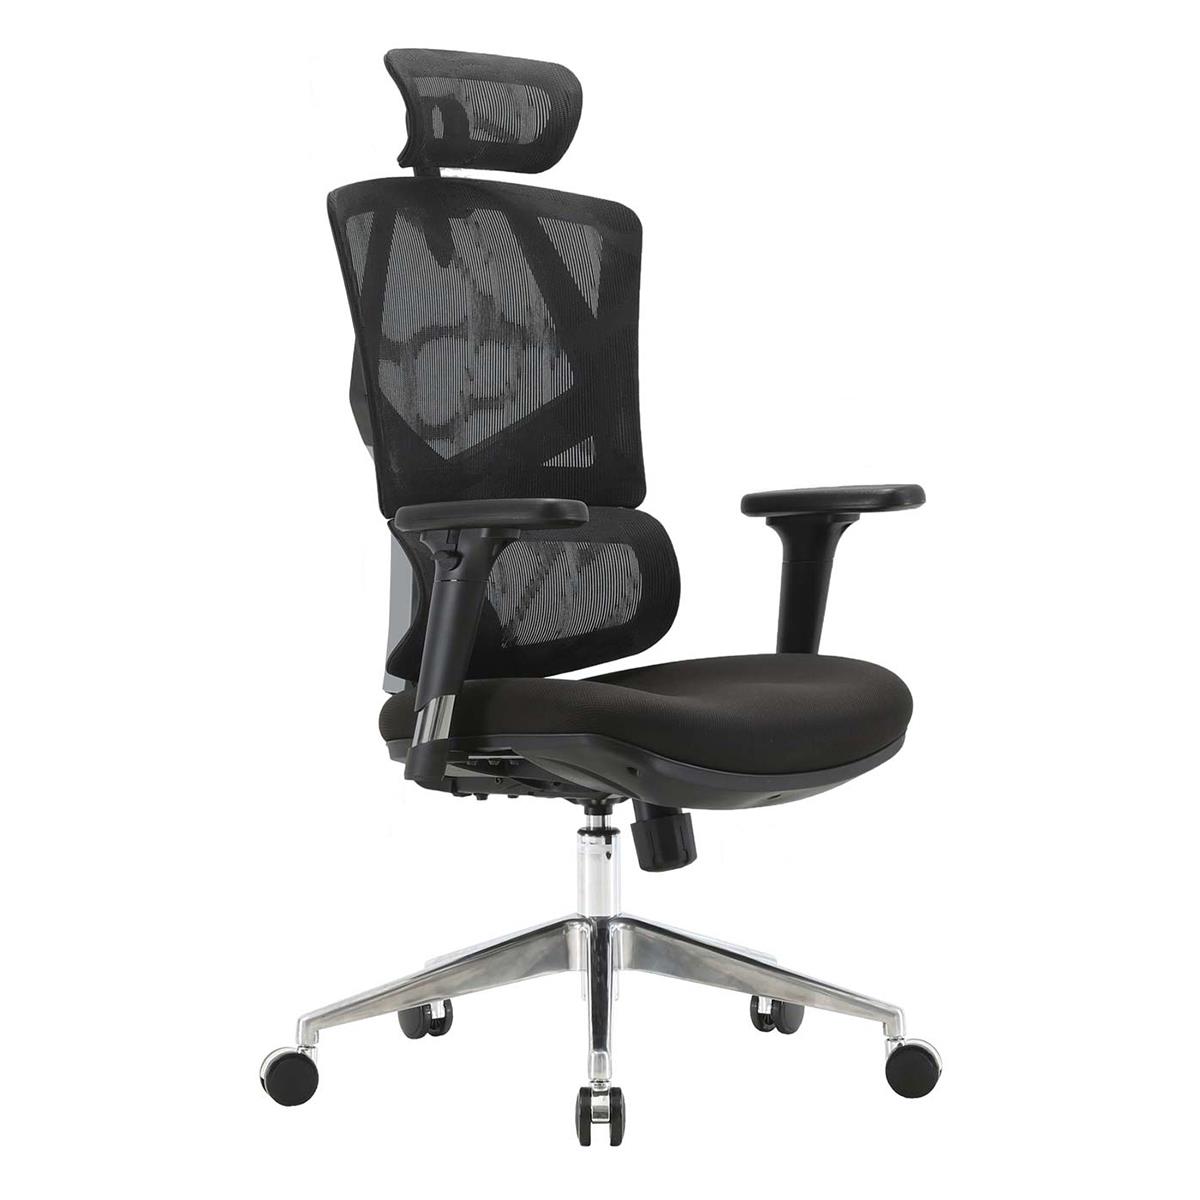 Ergonomischer Bürostuhl PHOENIX XXL, vielseitig einstellbar, gepolsterter Sitz, Rückenlehne mit Netzstoff, Farbe Schwarz